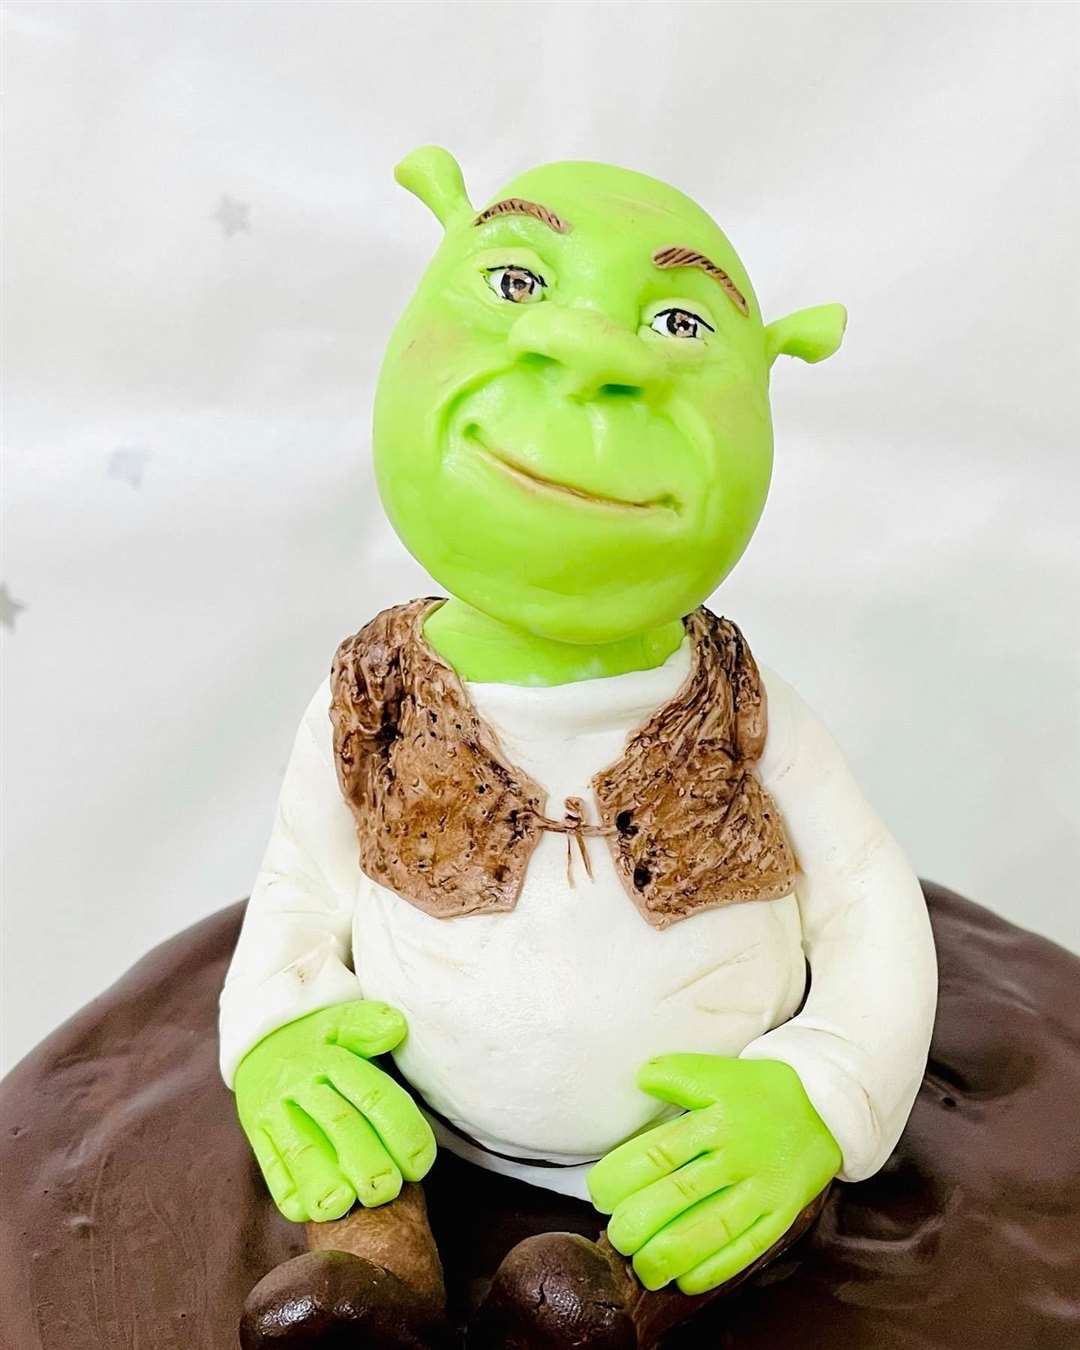 Shrek character, rendered in cake